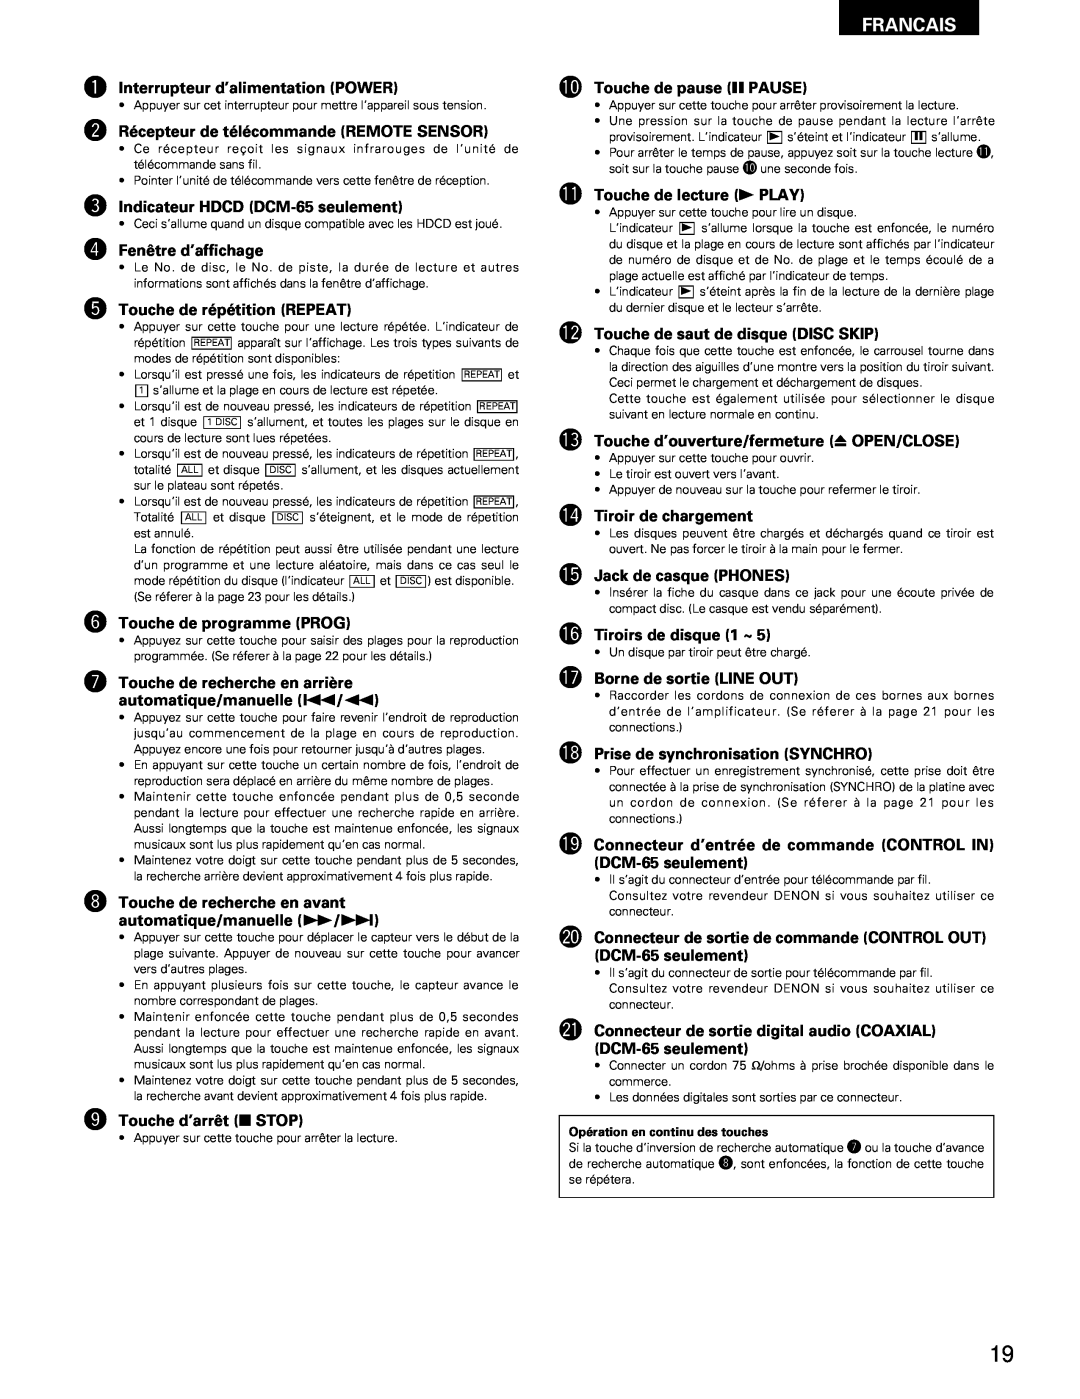 Denon DCM-65/35 manual Francais, q Interrupteur d’alimentation POWER 